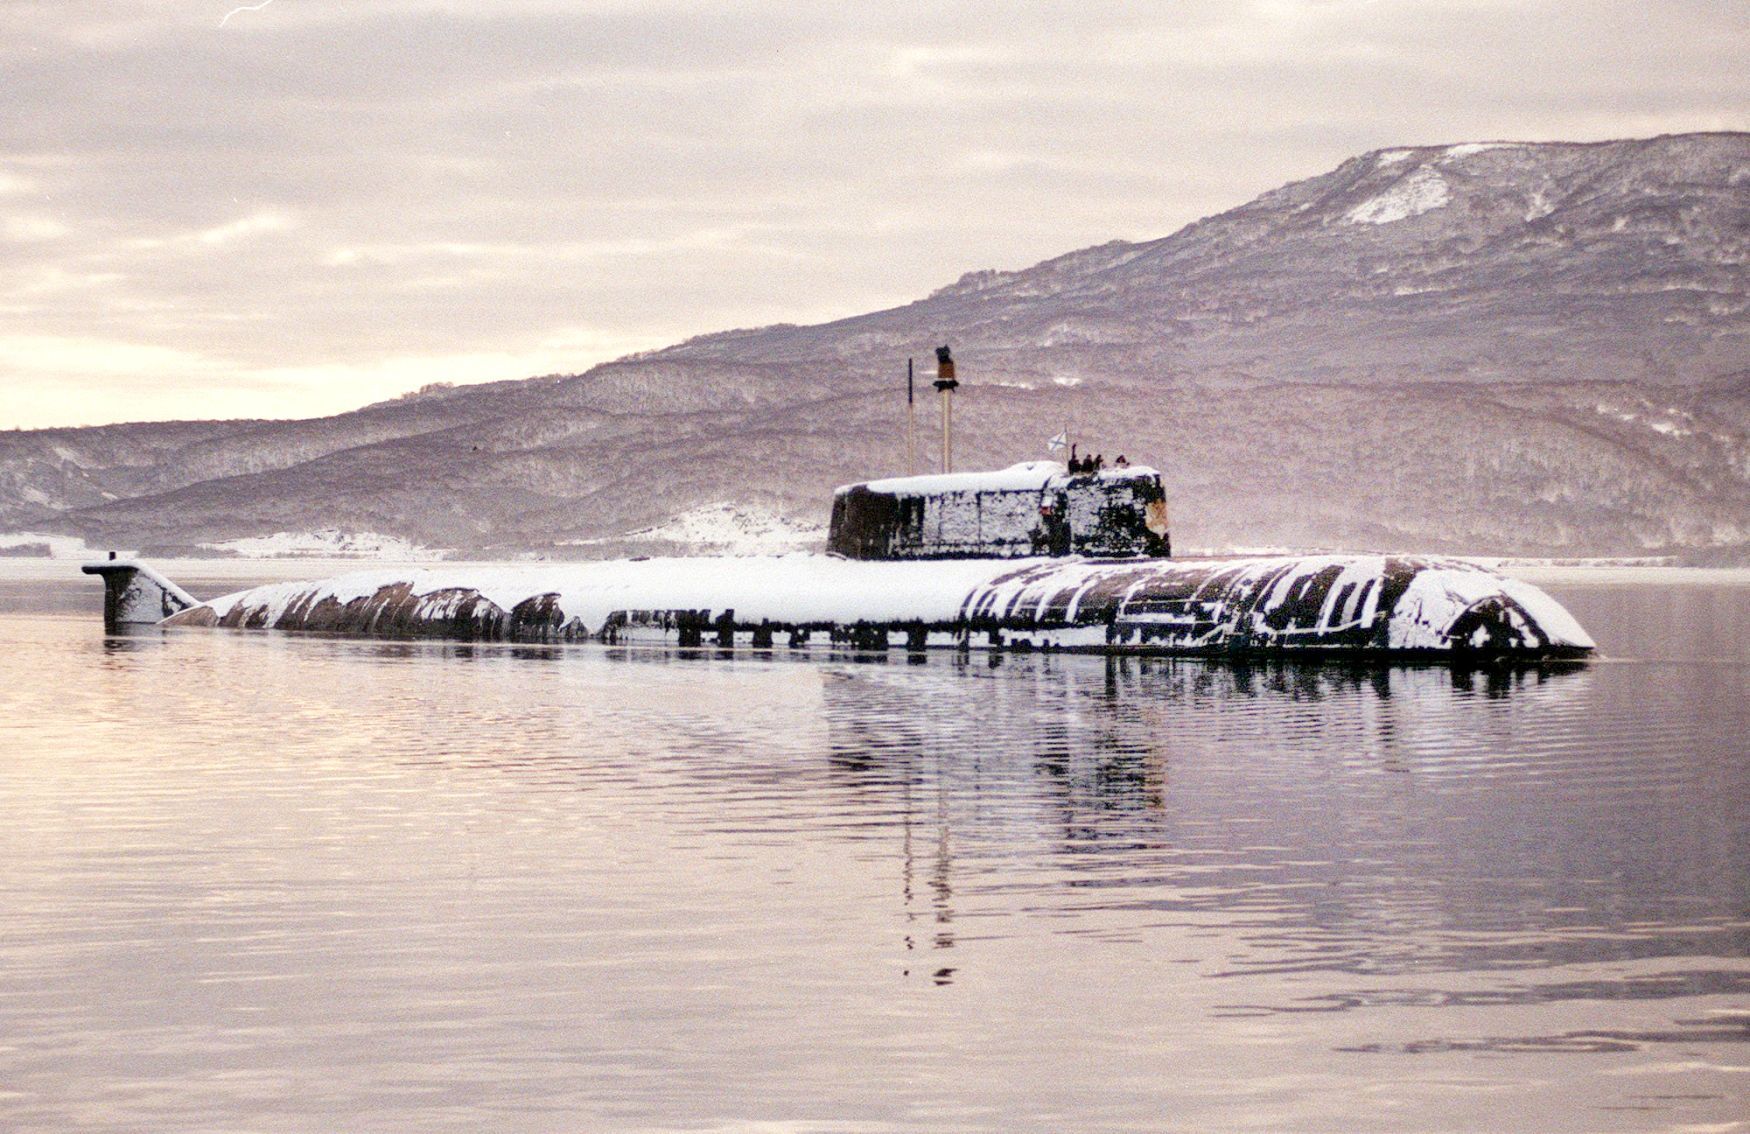 Jednorázové užití / Fotogalerie / Uplynulo 20 let od smrtící katastrofy jaderné ponorky Kursk / ČTK